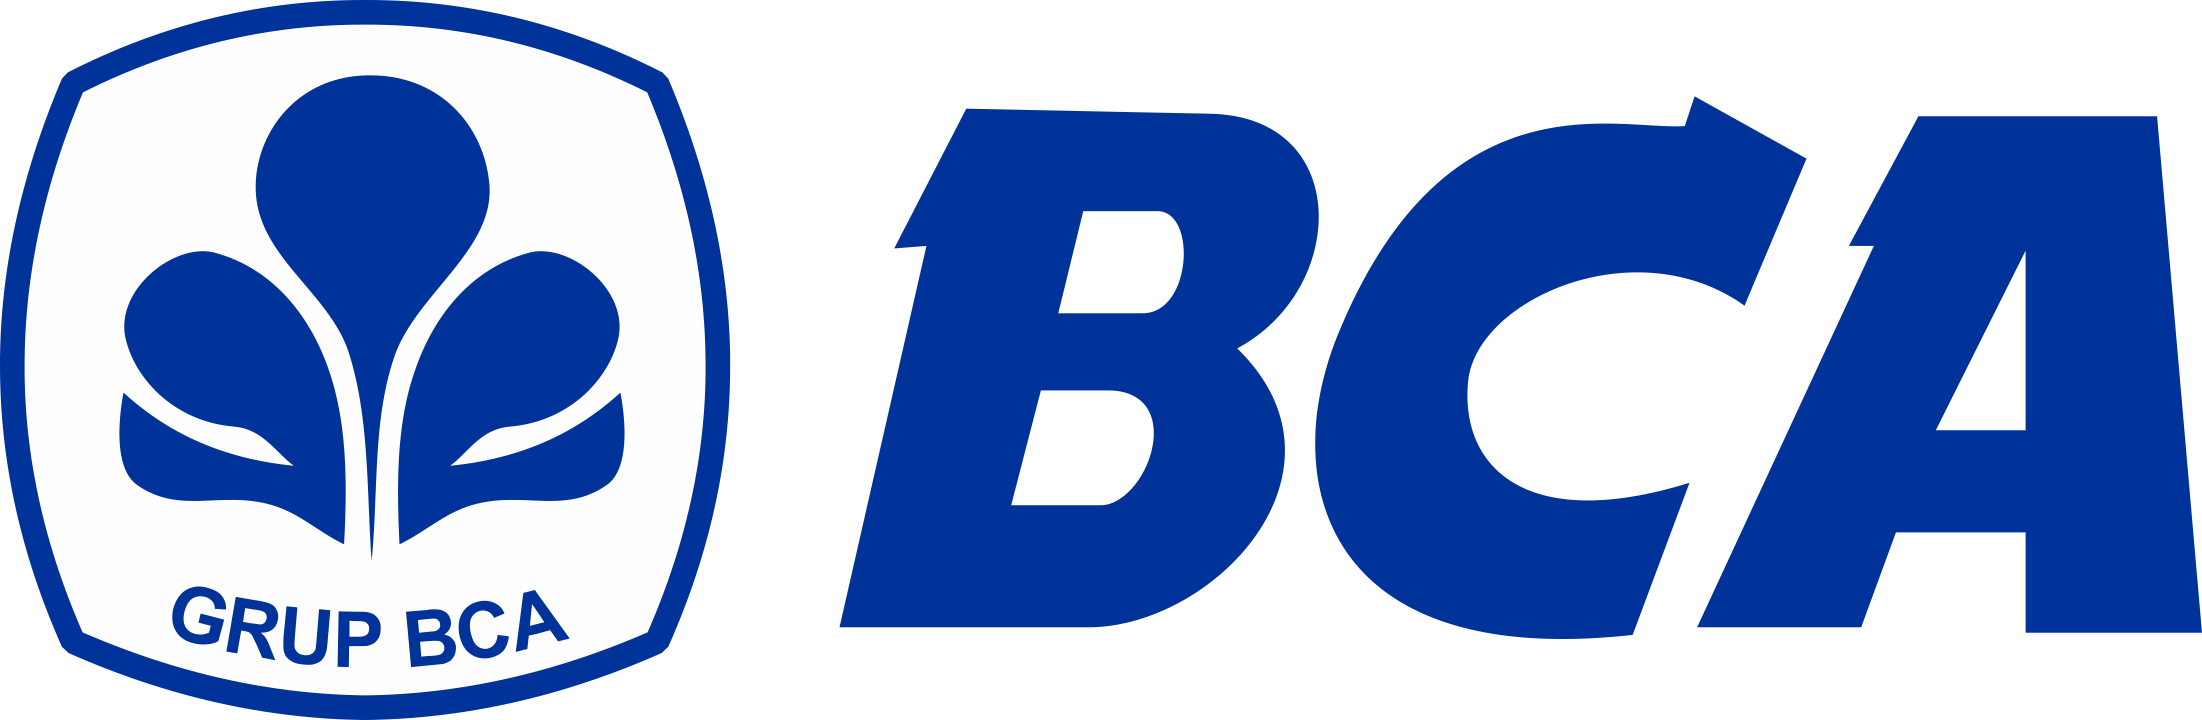 Bank-BCA-Logo-PNG-720p-FileVector69-1-1-1-1-2-1-1.png